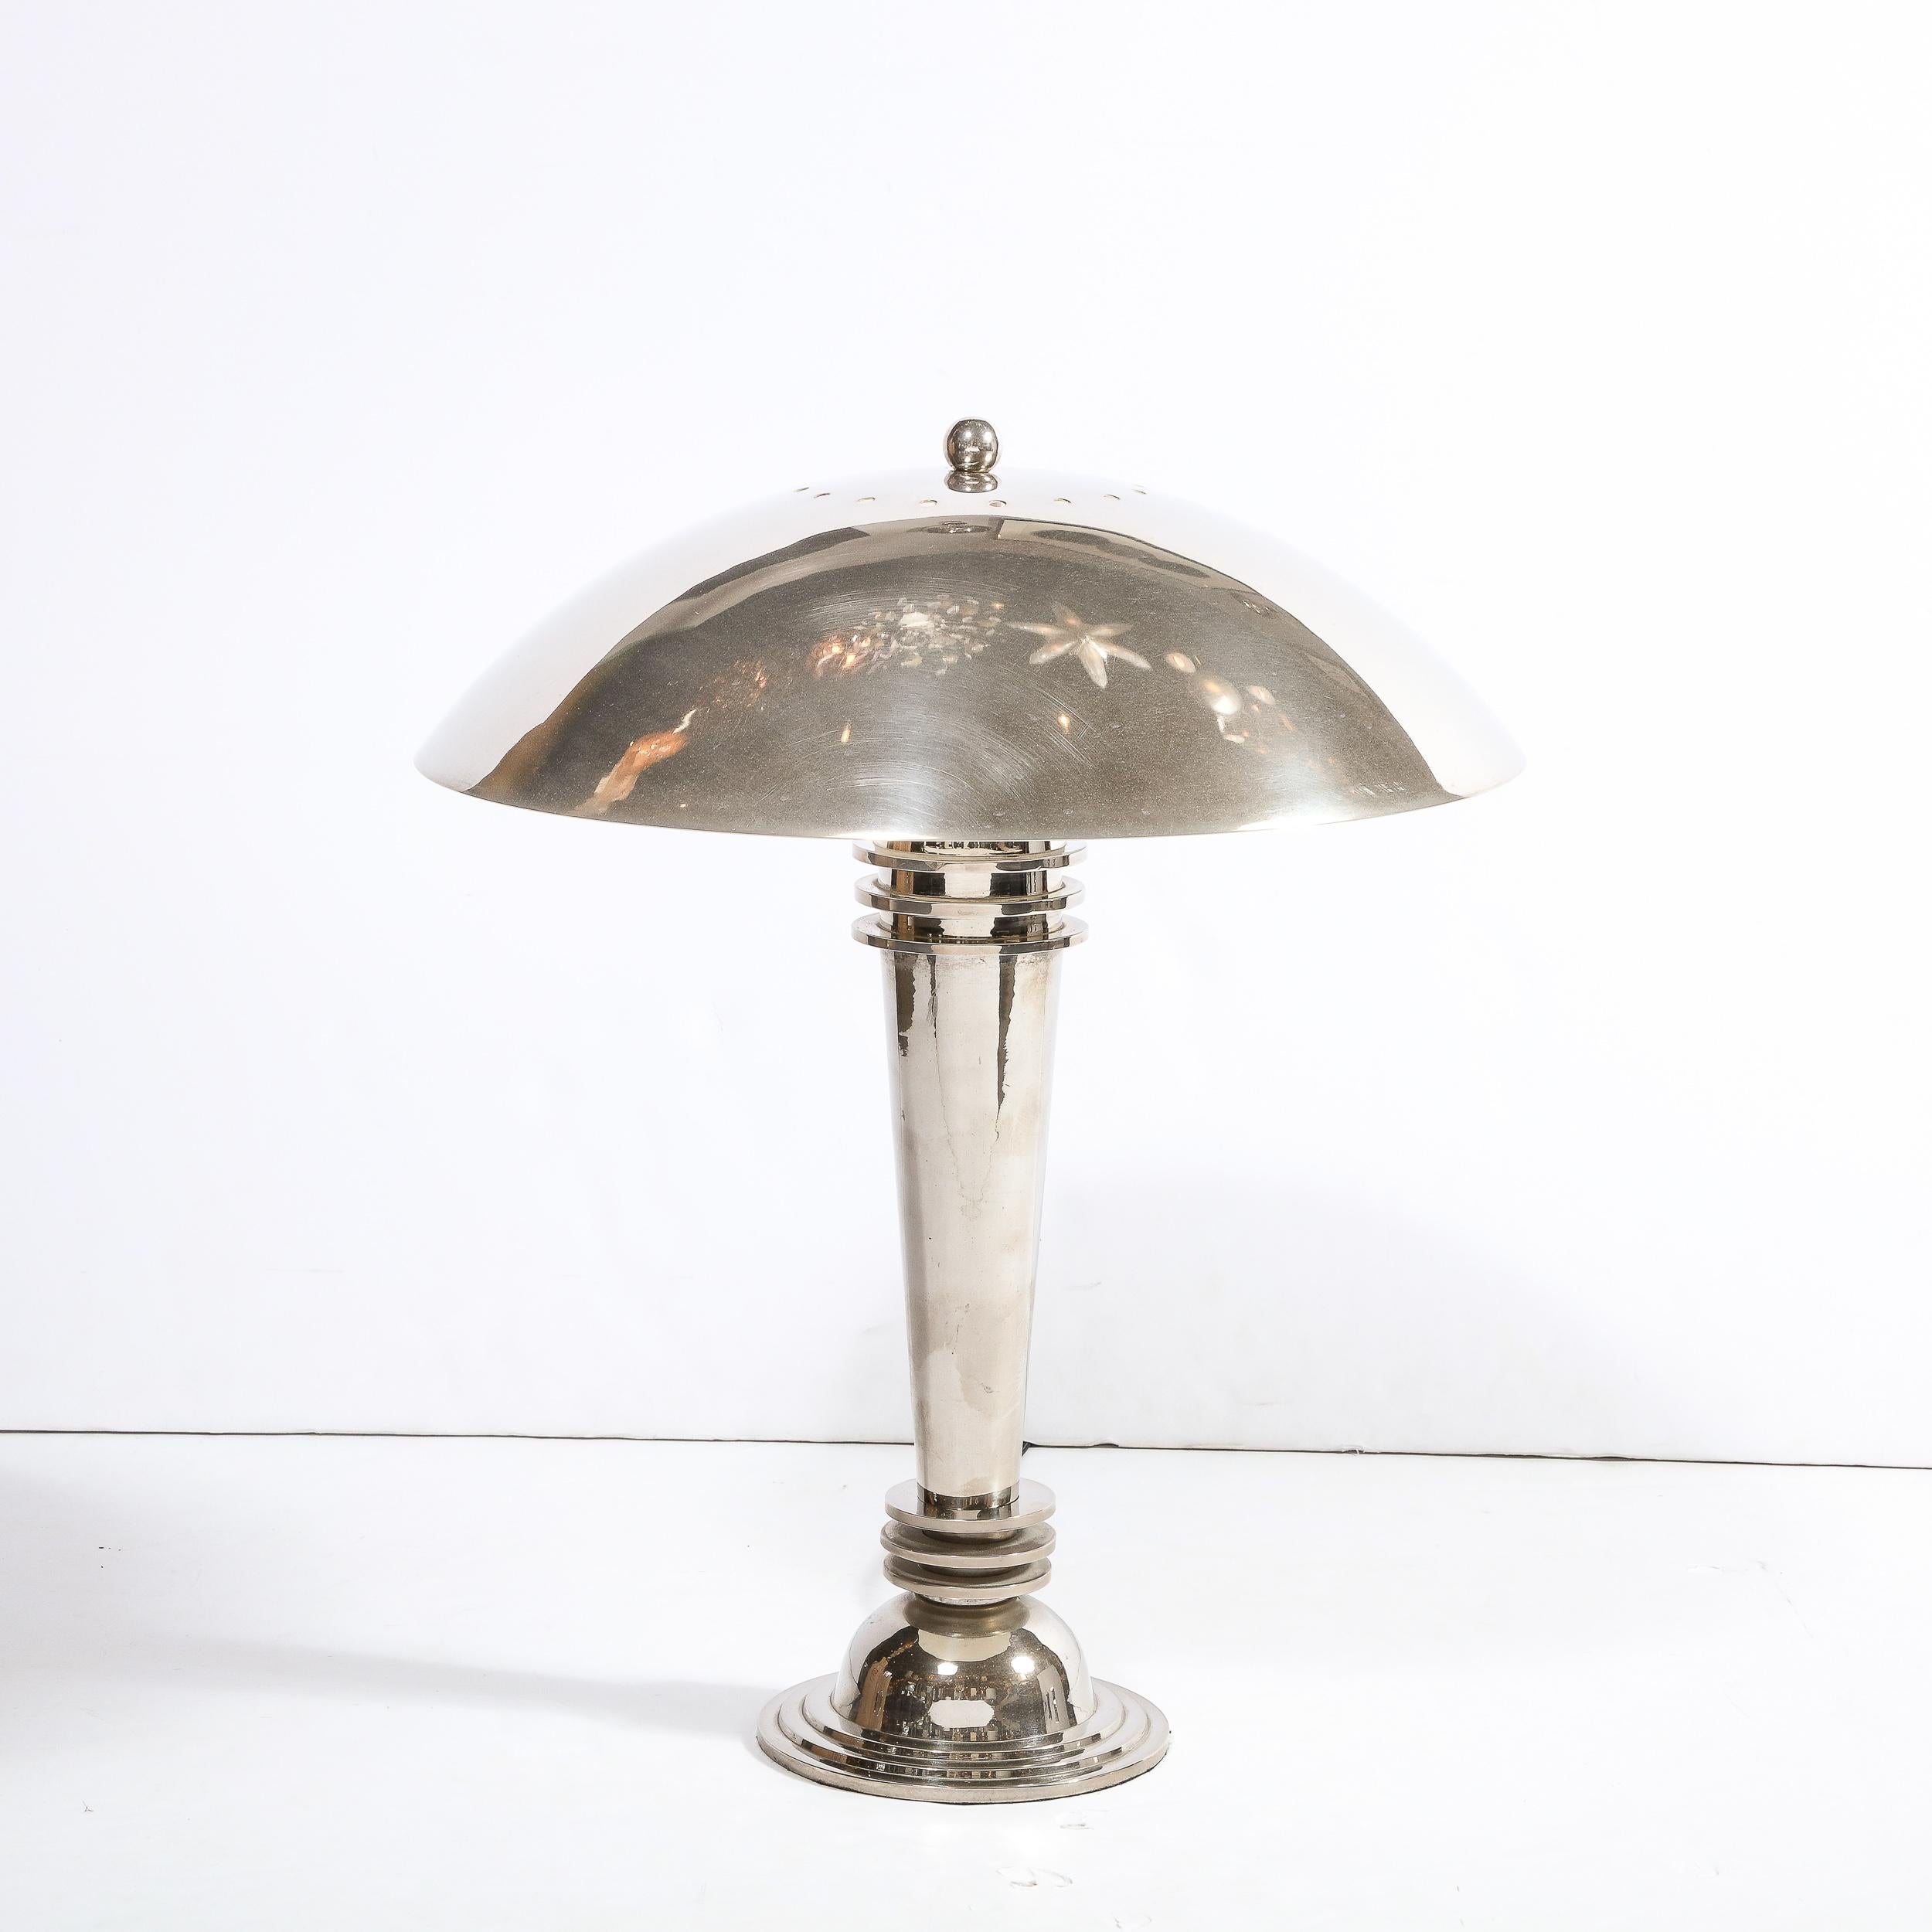 Cette superbe lampe de table Art déco de l'âge du Machin a été réalisée aux États-Unis vers 1935. Il présente une base bombée convexe de style gratte-ciel avec trois bandes concentriques en relief dans un chrome poli lustré. Le corps conique allongé